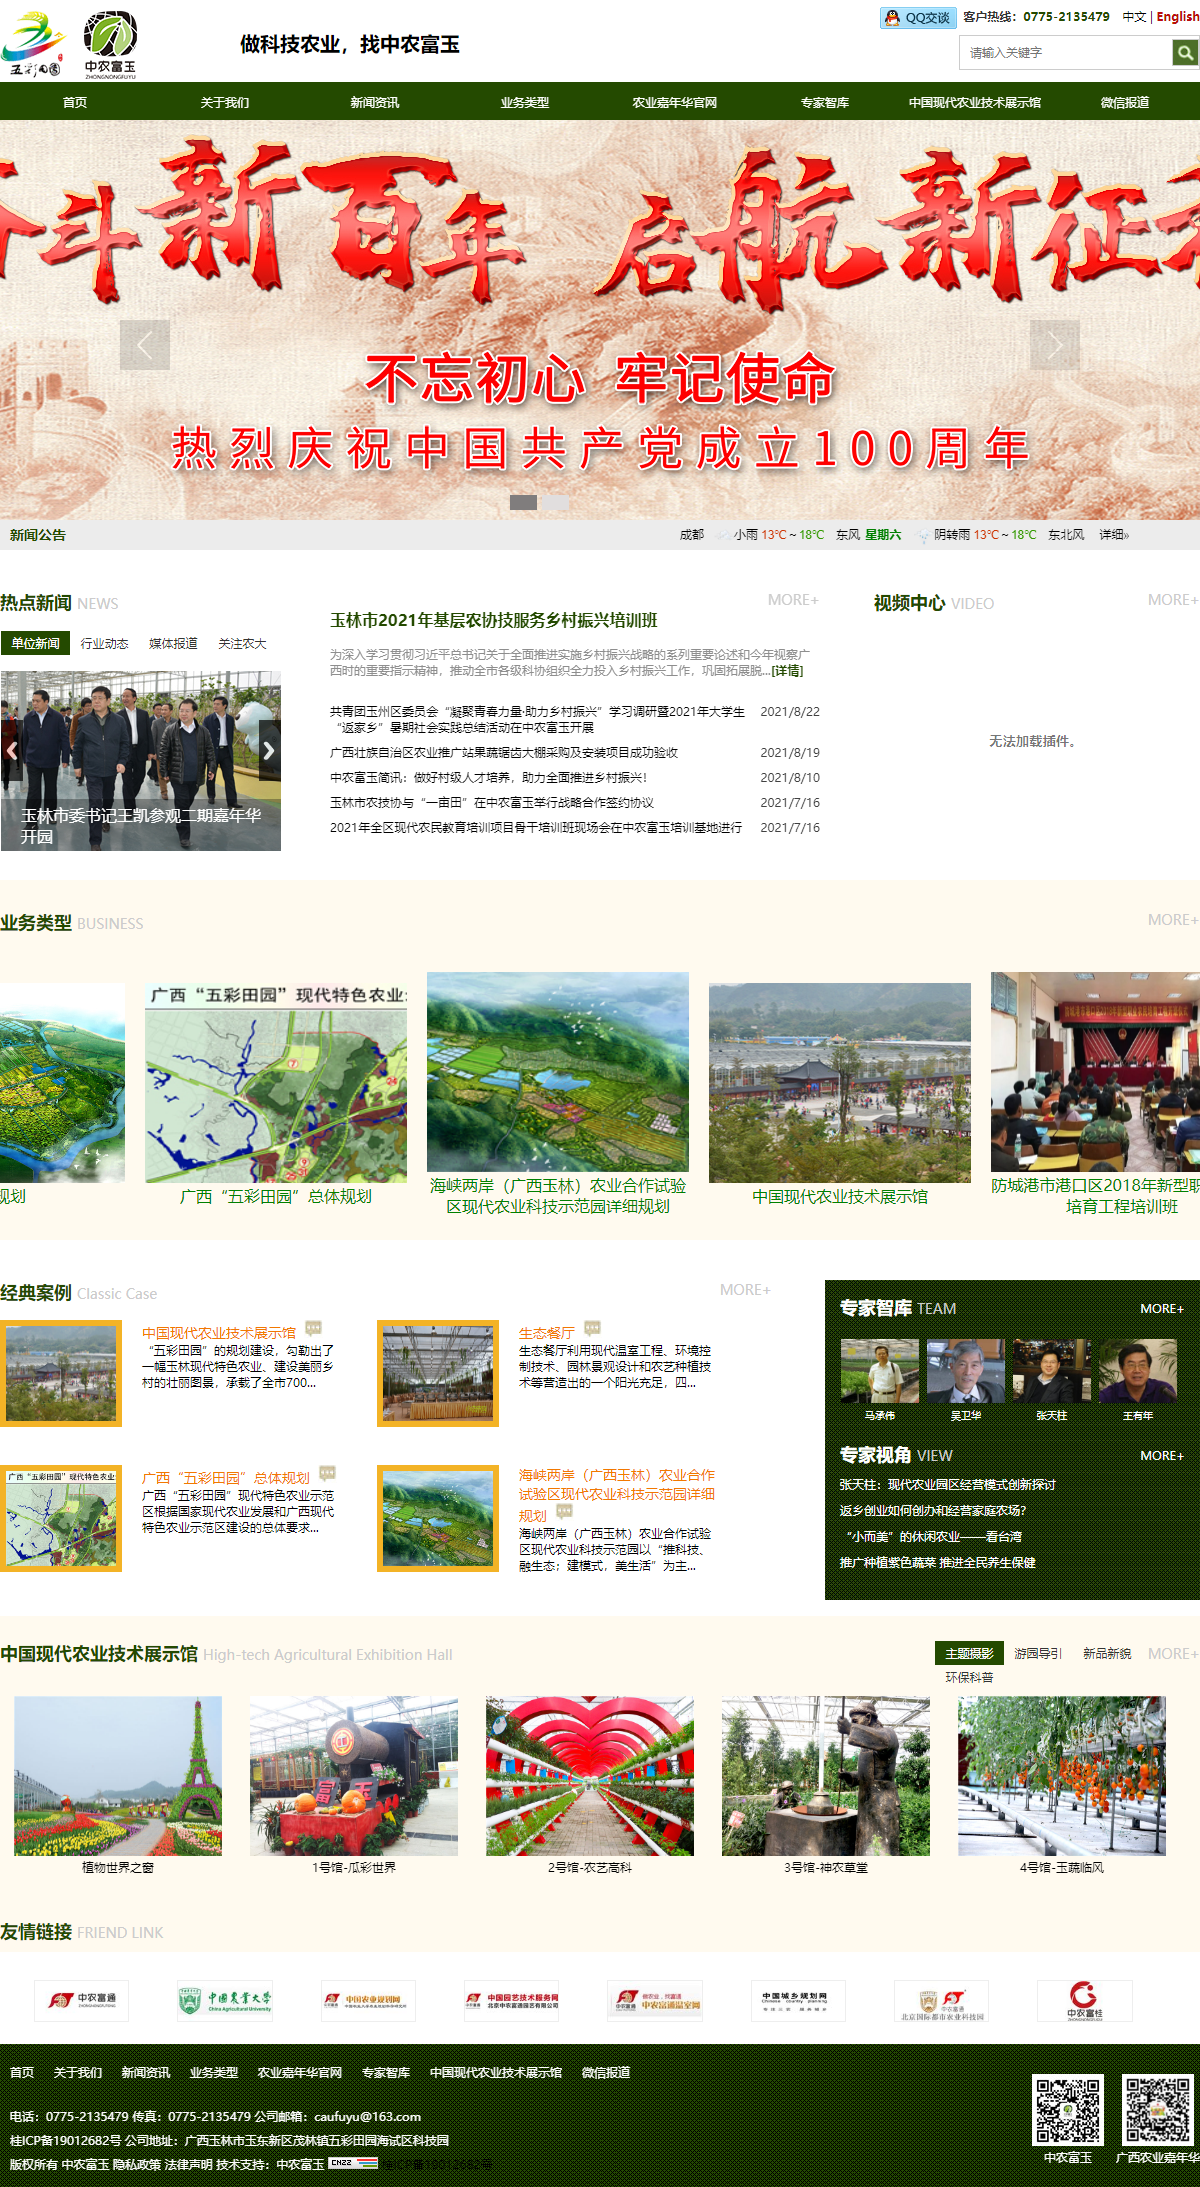 广西中农富玉国际农业科技有限公司网站案例